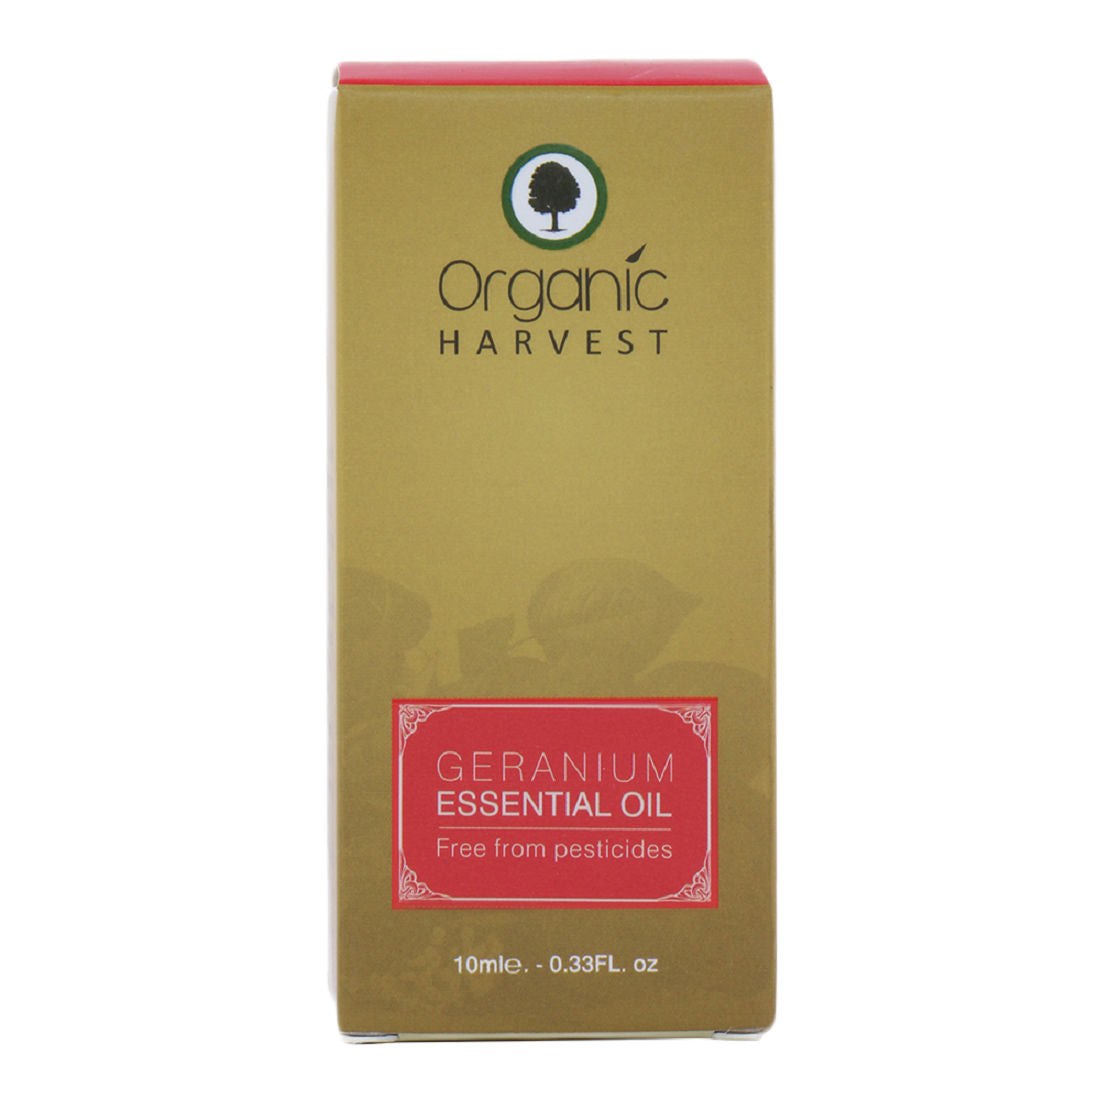 Organic Harvest Geranium Essential Oil